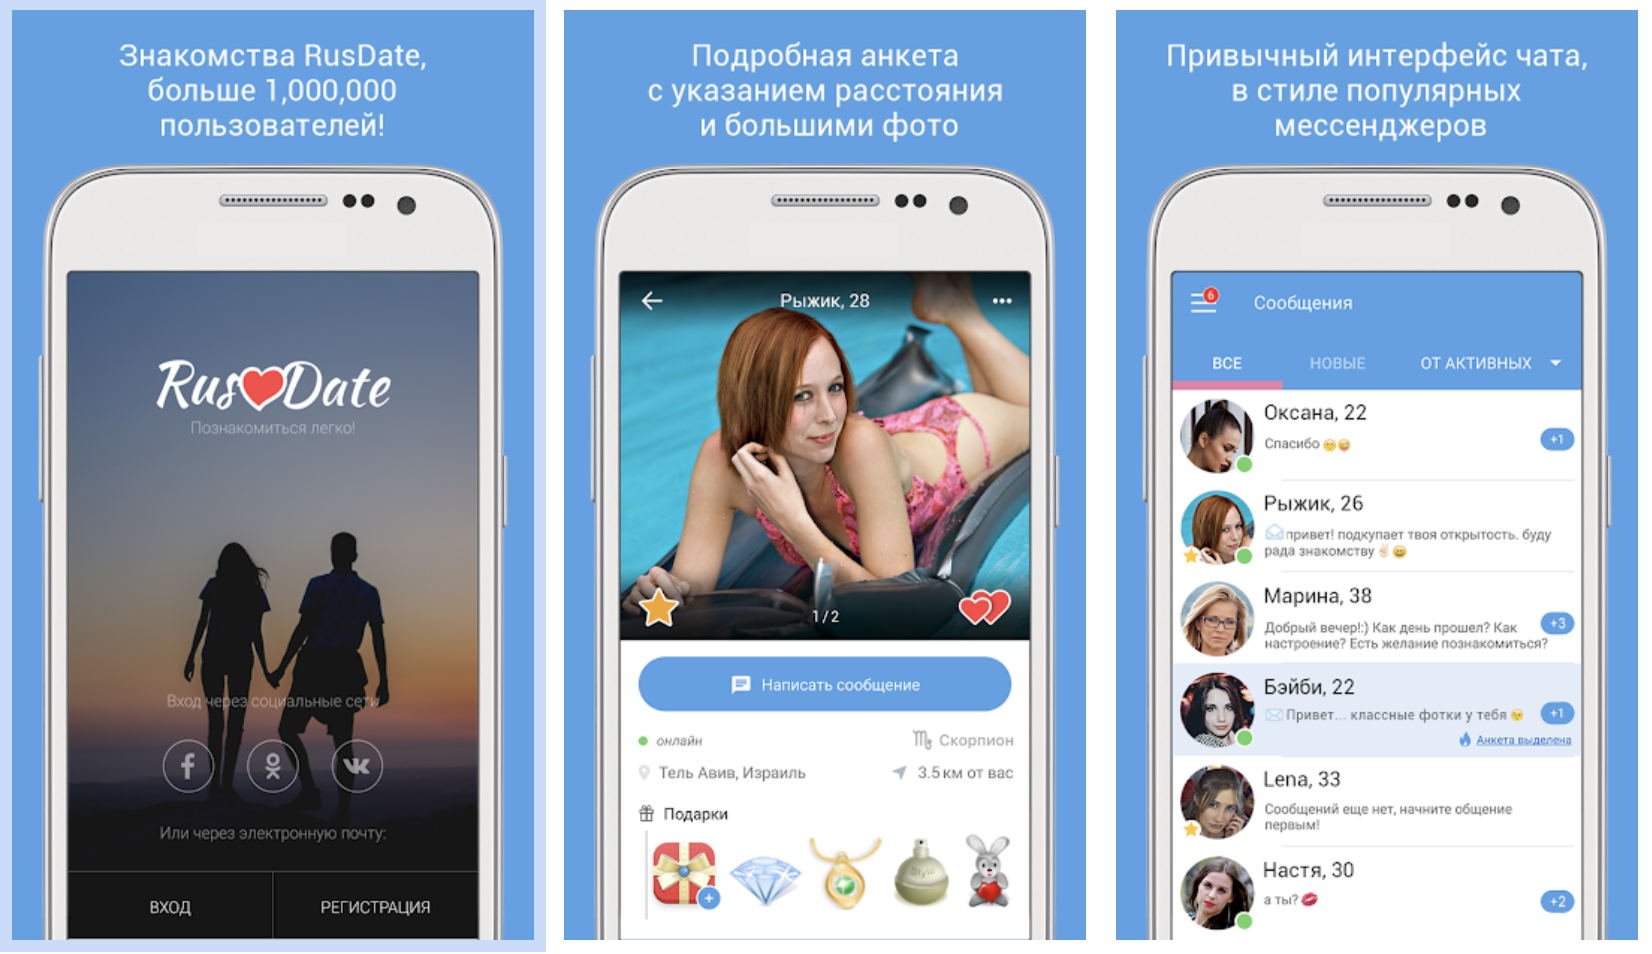 RusDate - приложение для знакомств с широким функционалом.